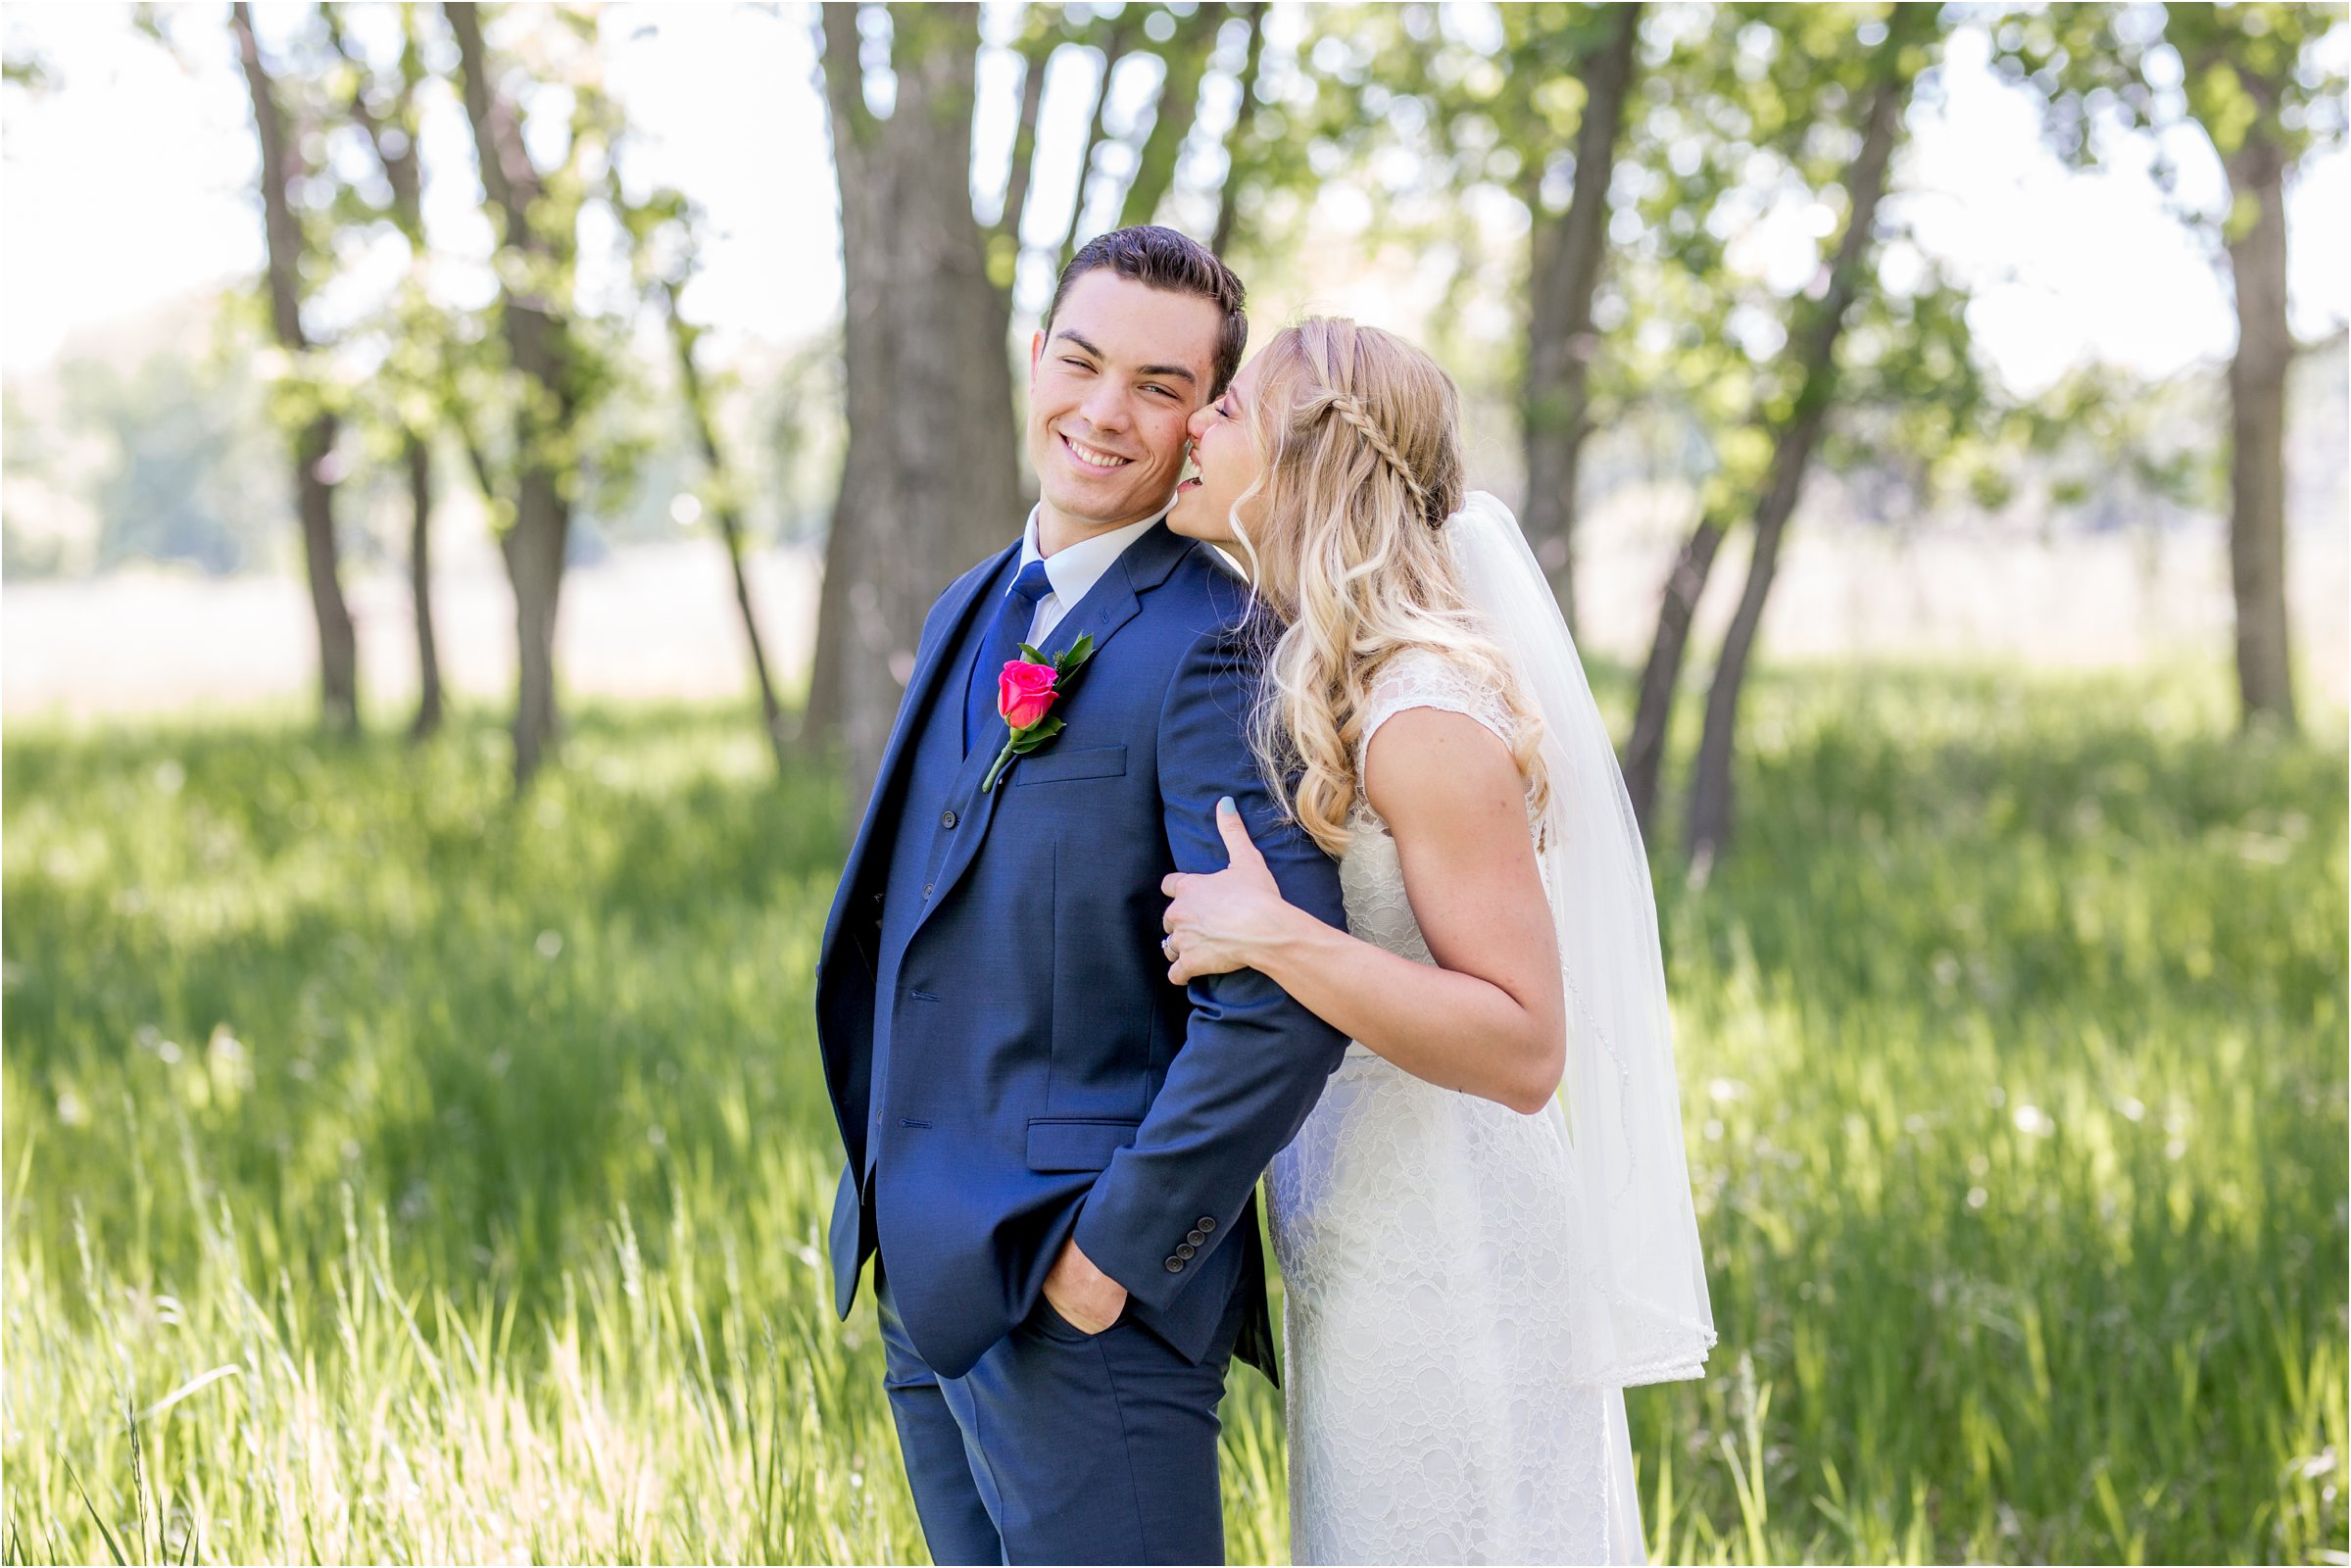 Greeley, Colrado Wedding by Northern Colorado Wedding Photographer